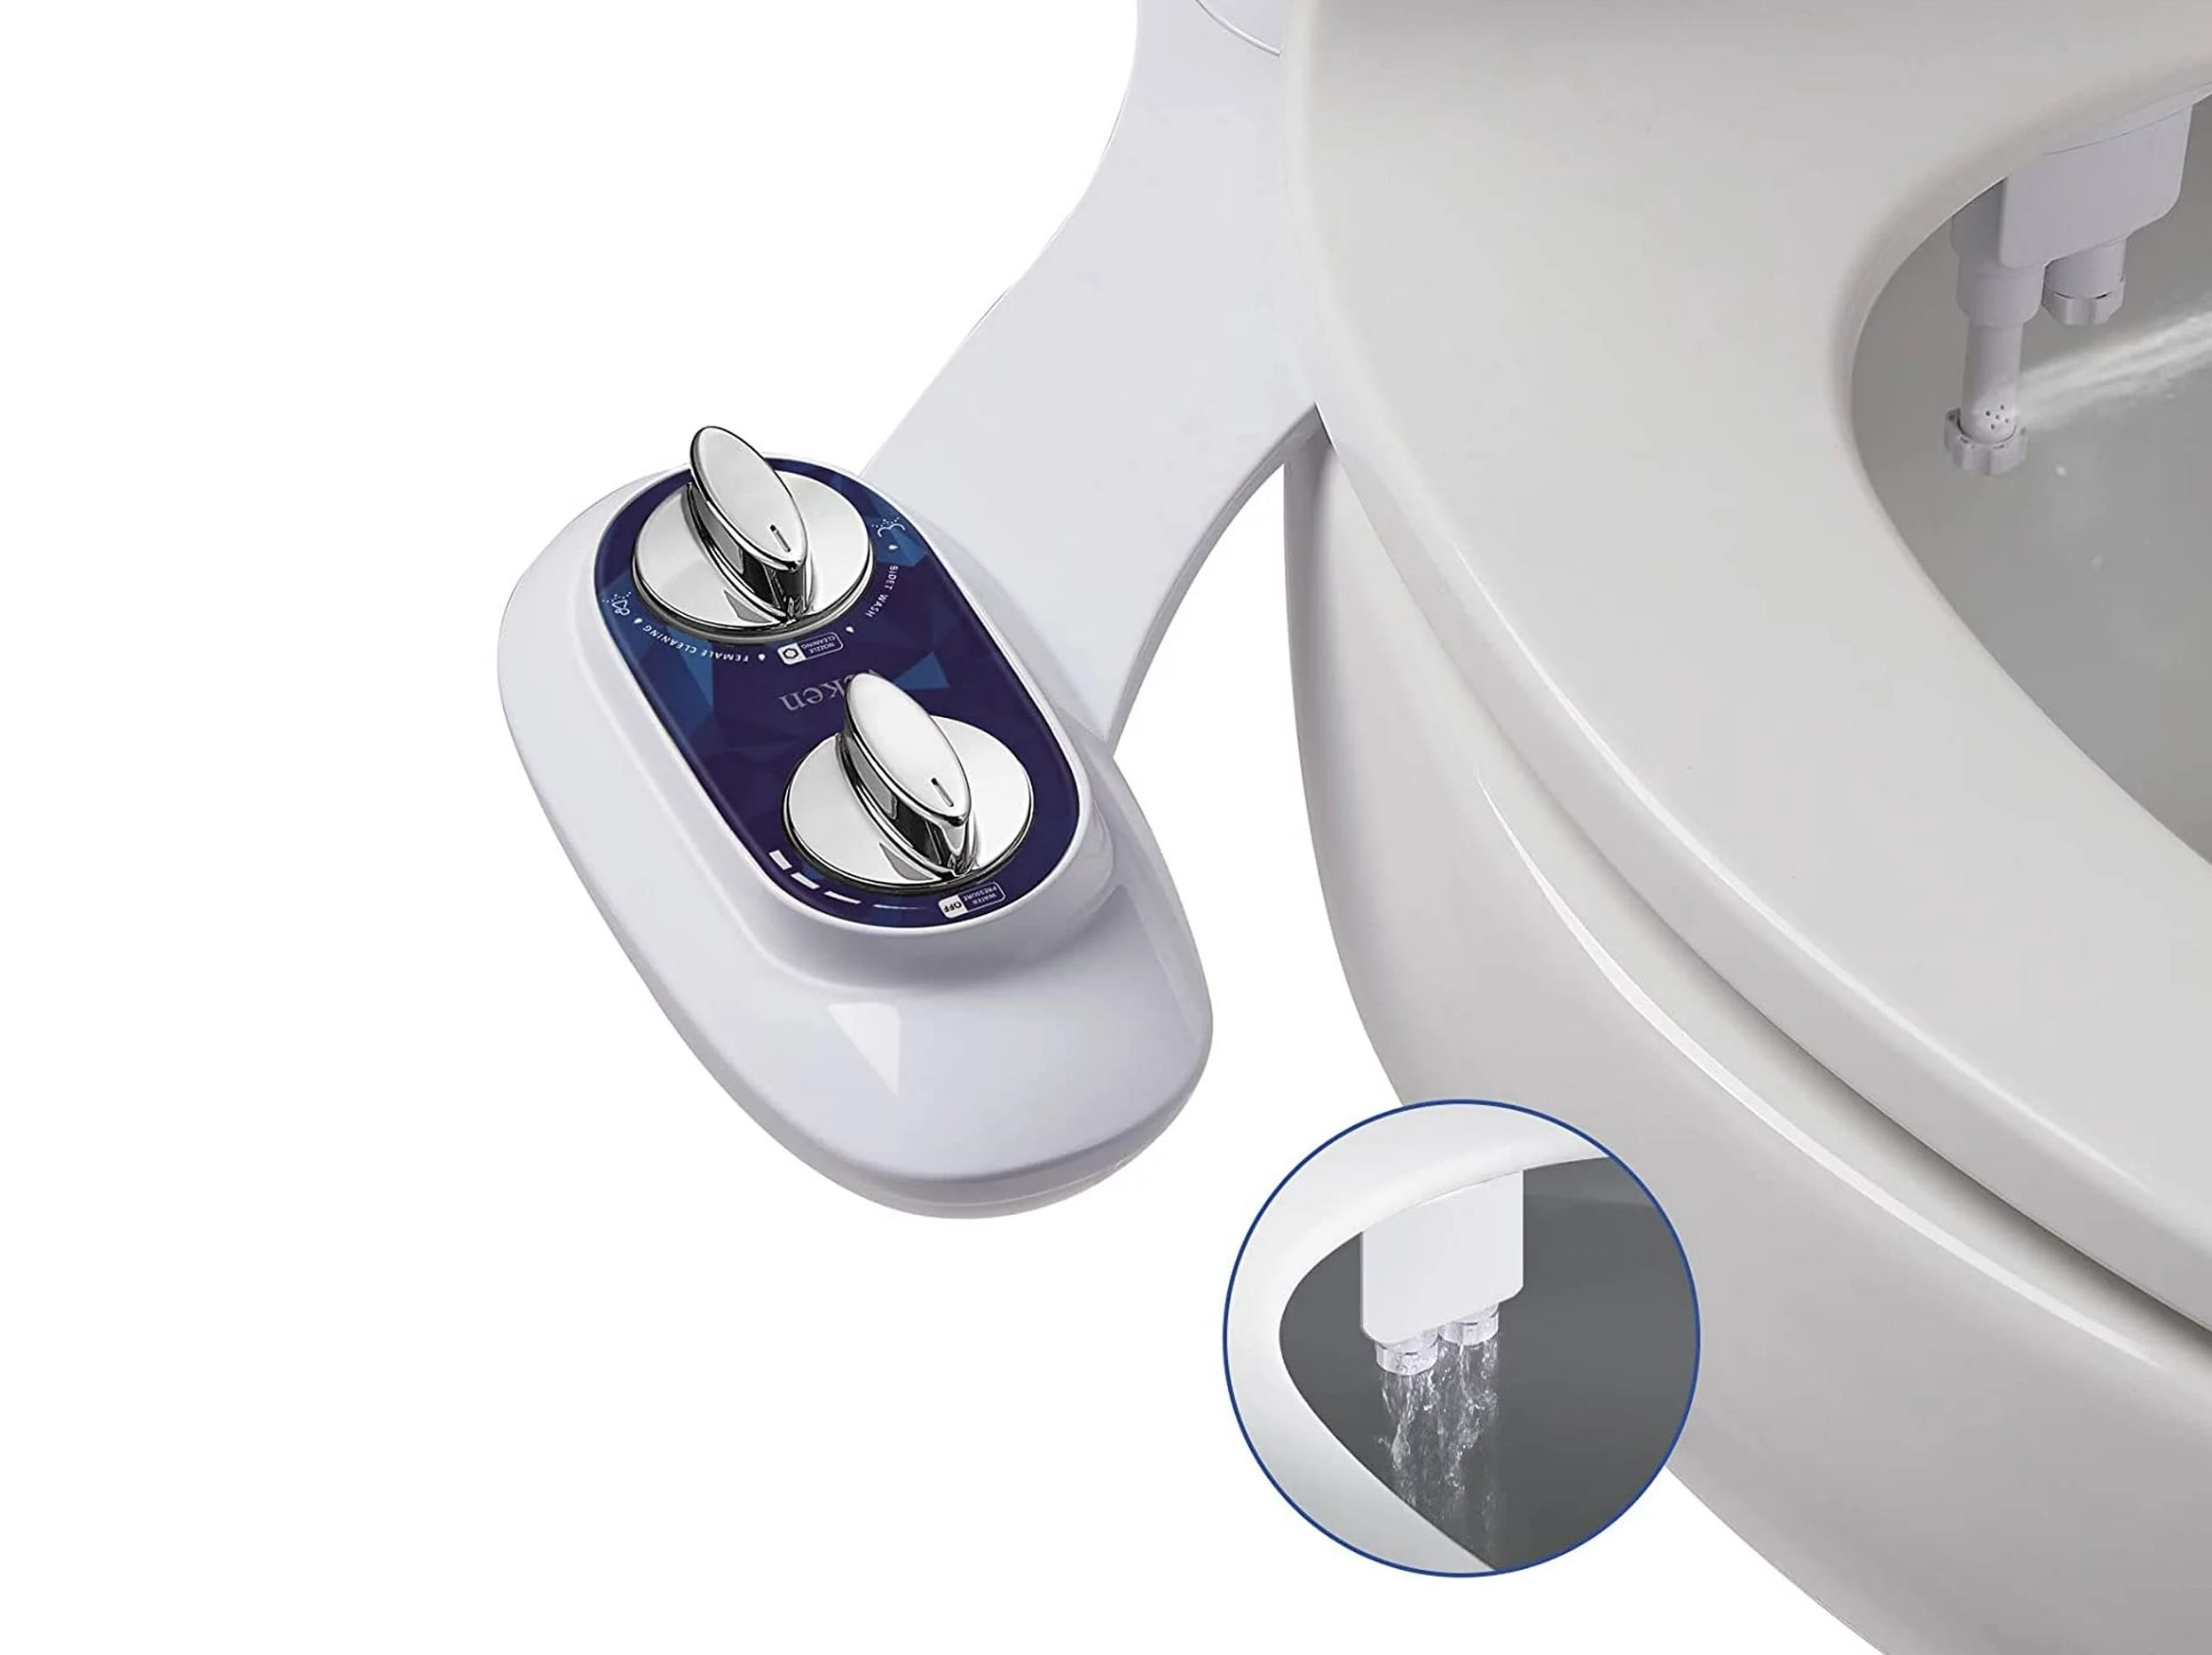 Bidet Attachment - SAMODRA Non-Electric Cold Water Bidet Toilet Seat Attachment